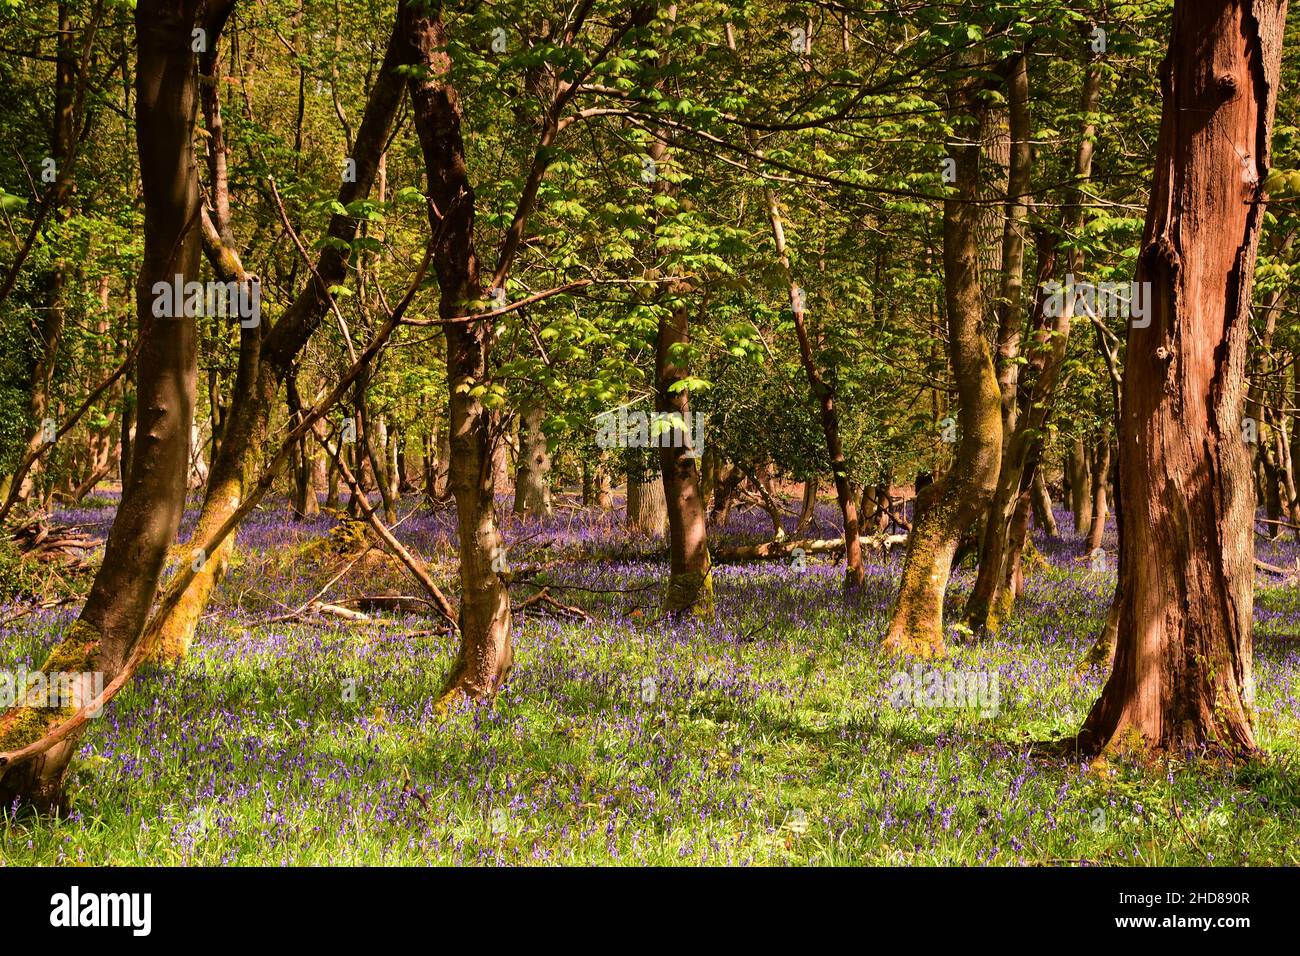 Bluebell Woods at the Ashridge Estate, Hertfordshire, England Stock Photo